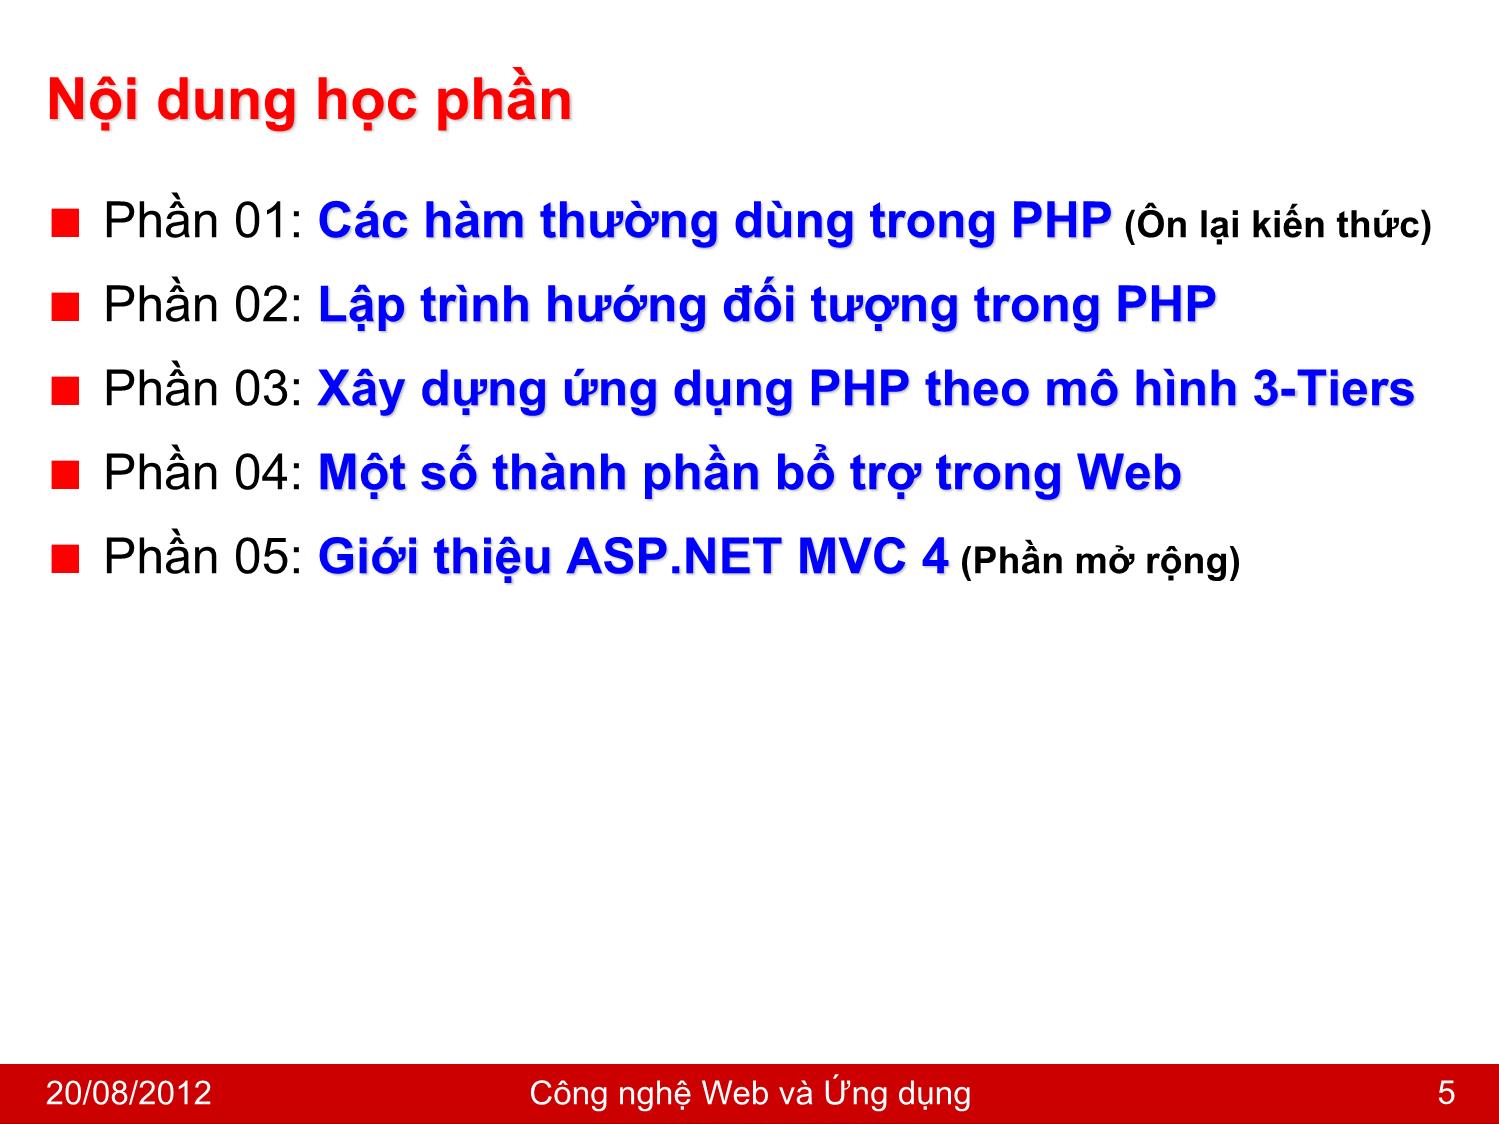 Bài giảng Công nghệ Web và ứng dụng - Giới thiệu môn học - Nguyễn Hoàng Tùng trang 5